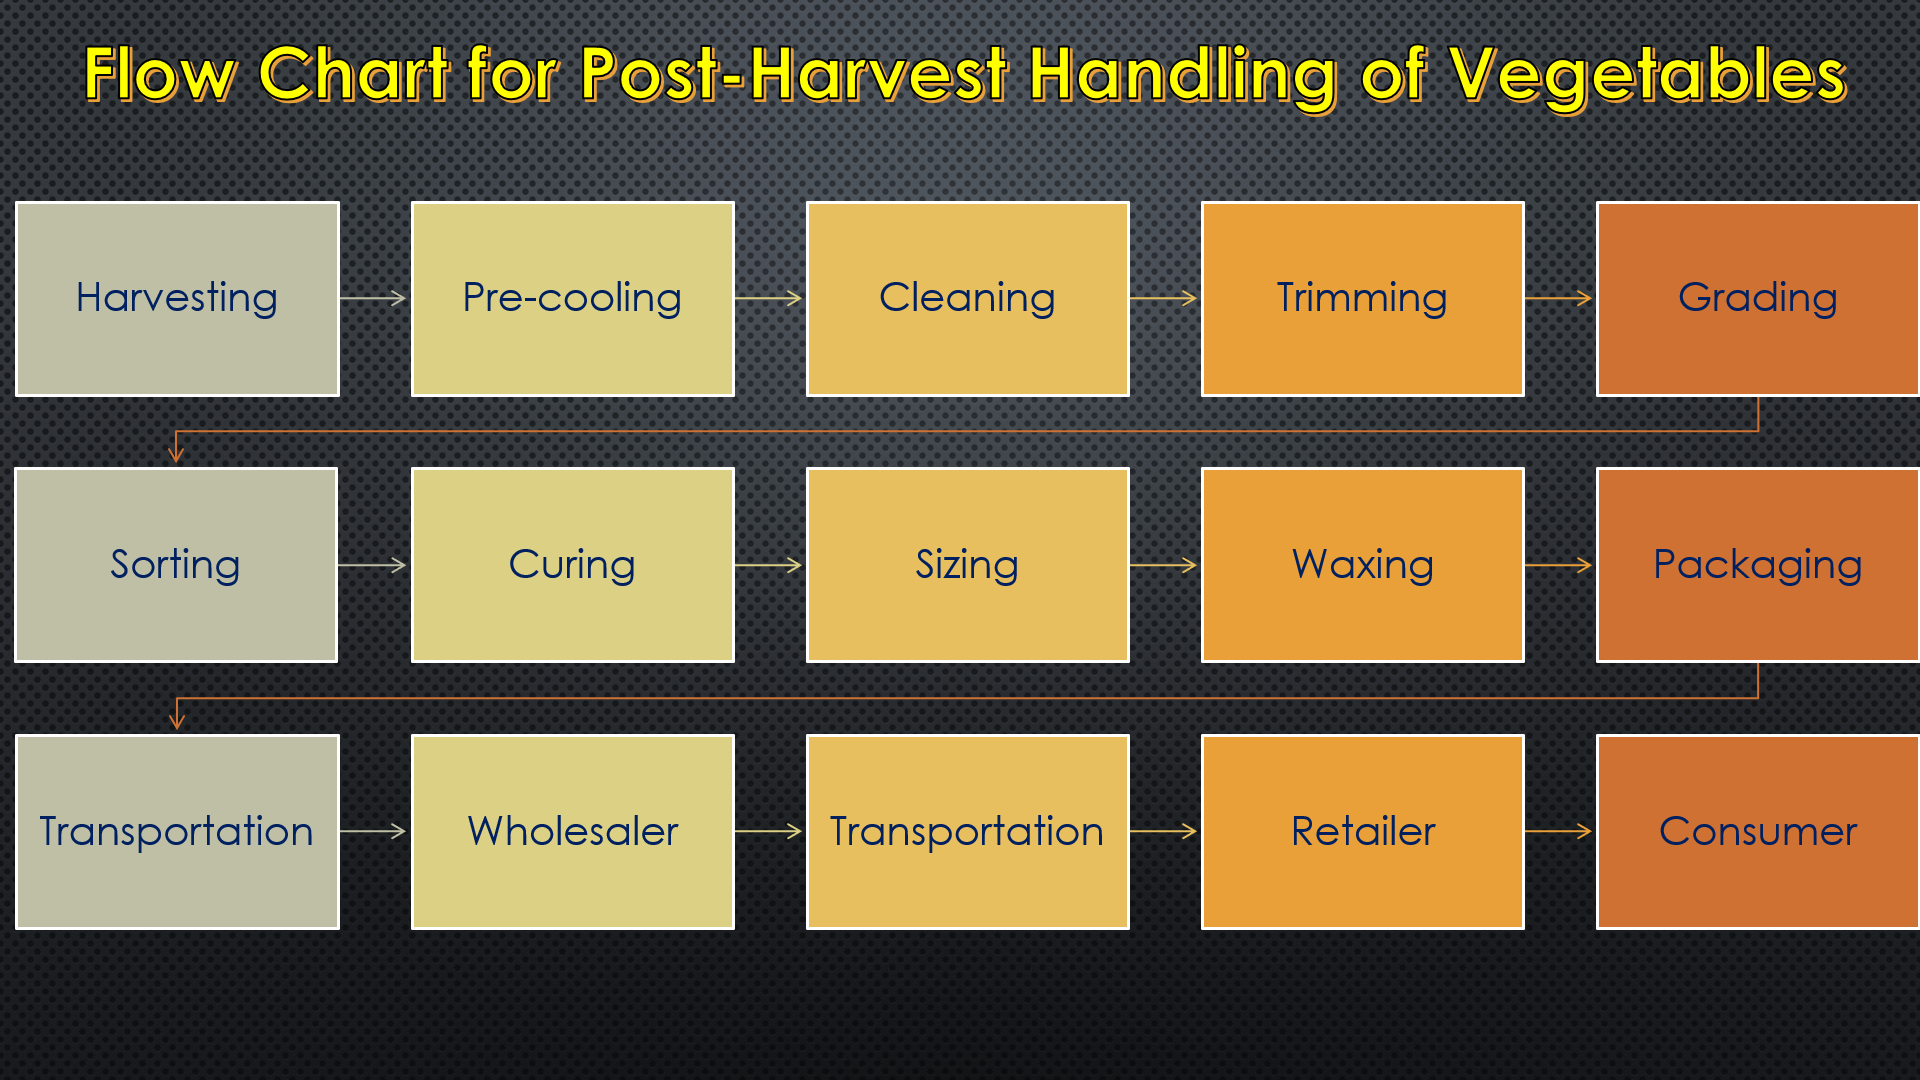 Flow Chard for Post-Harvest Handling of Vegetables